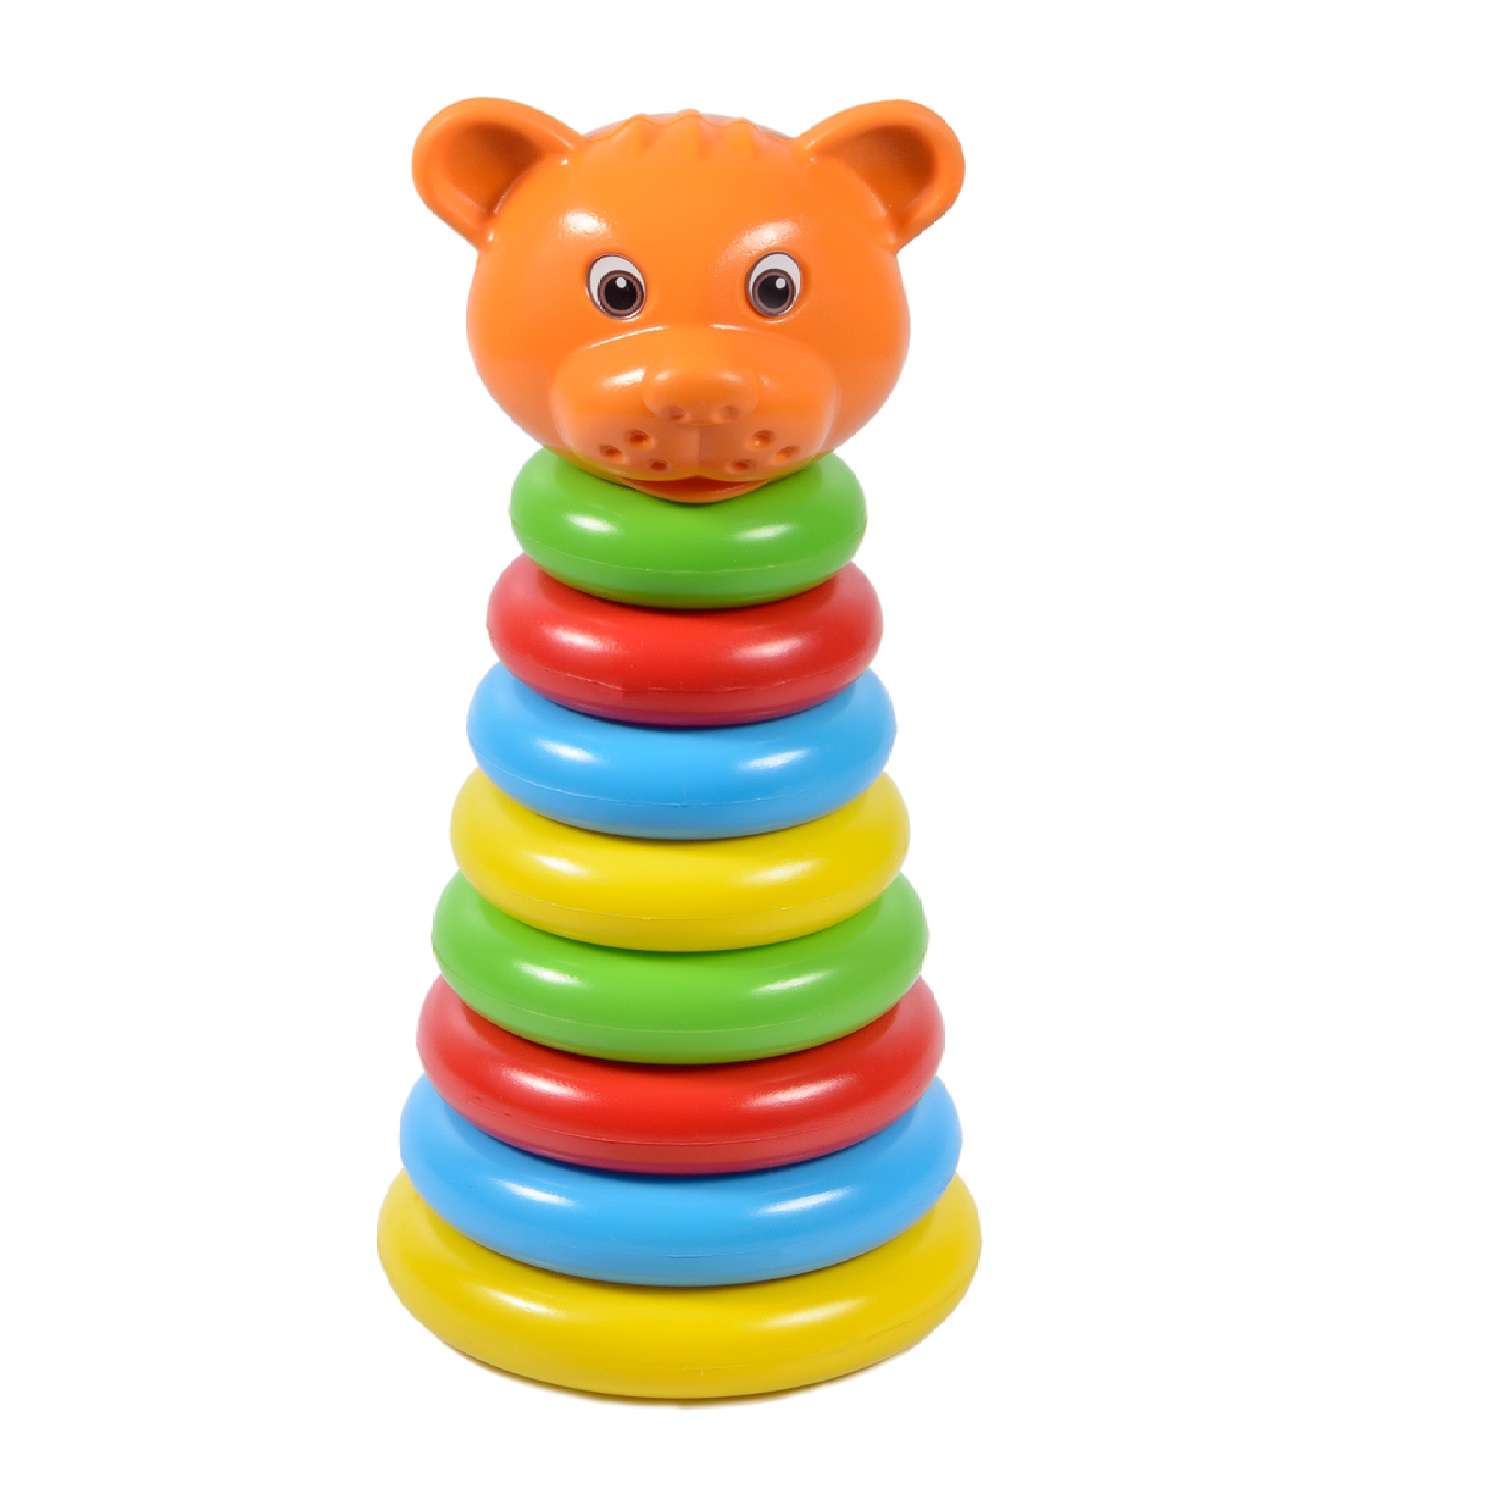 Пирамидка детская Green Plast Животные Медведь обучающая детская игрушка - фото 1